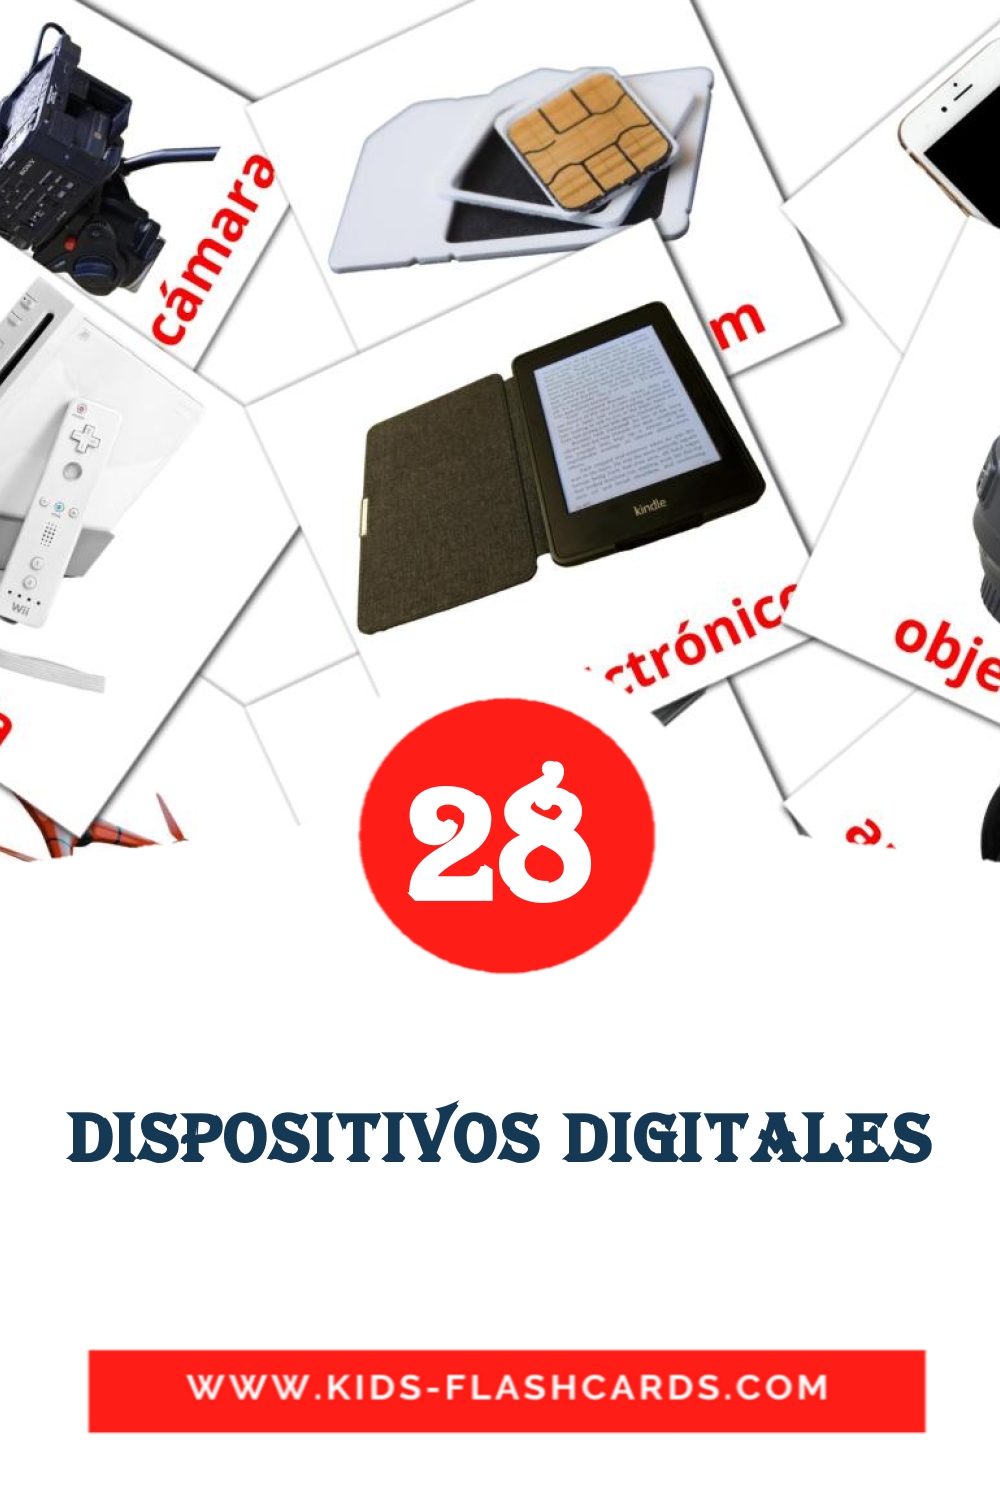 29 cartes illustrées de Dispositivos digitales pour la maternelle en espagnol